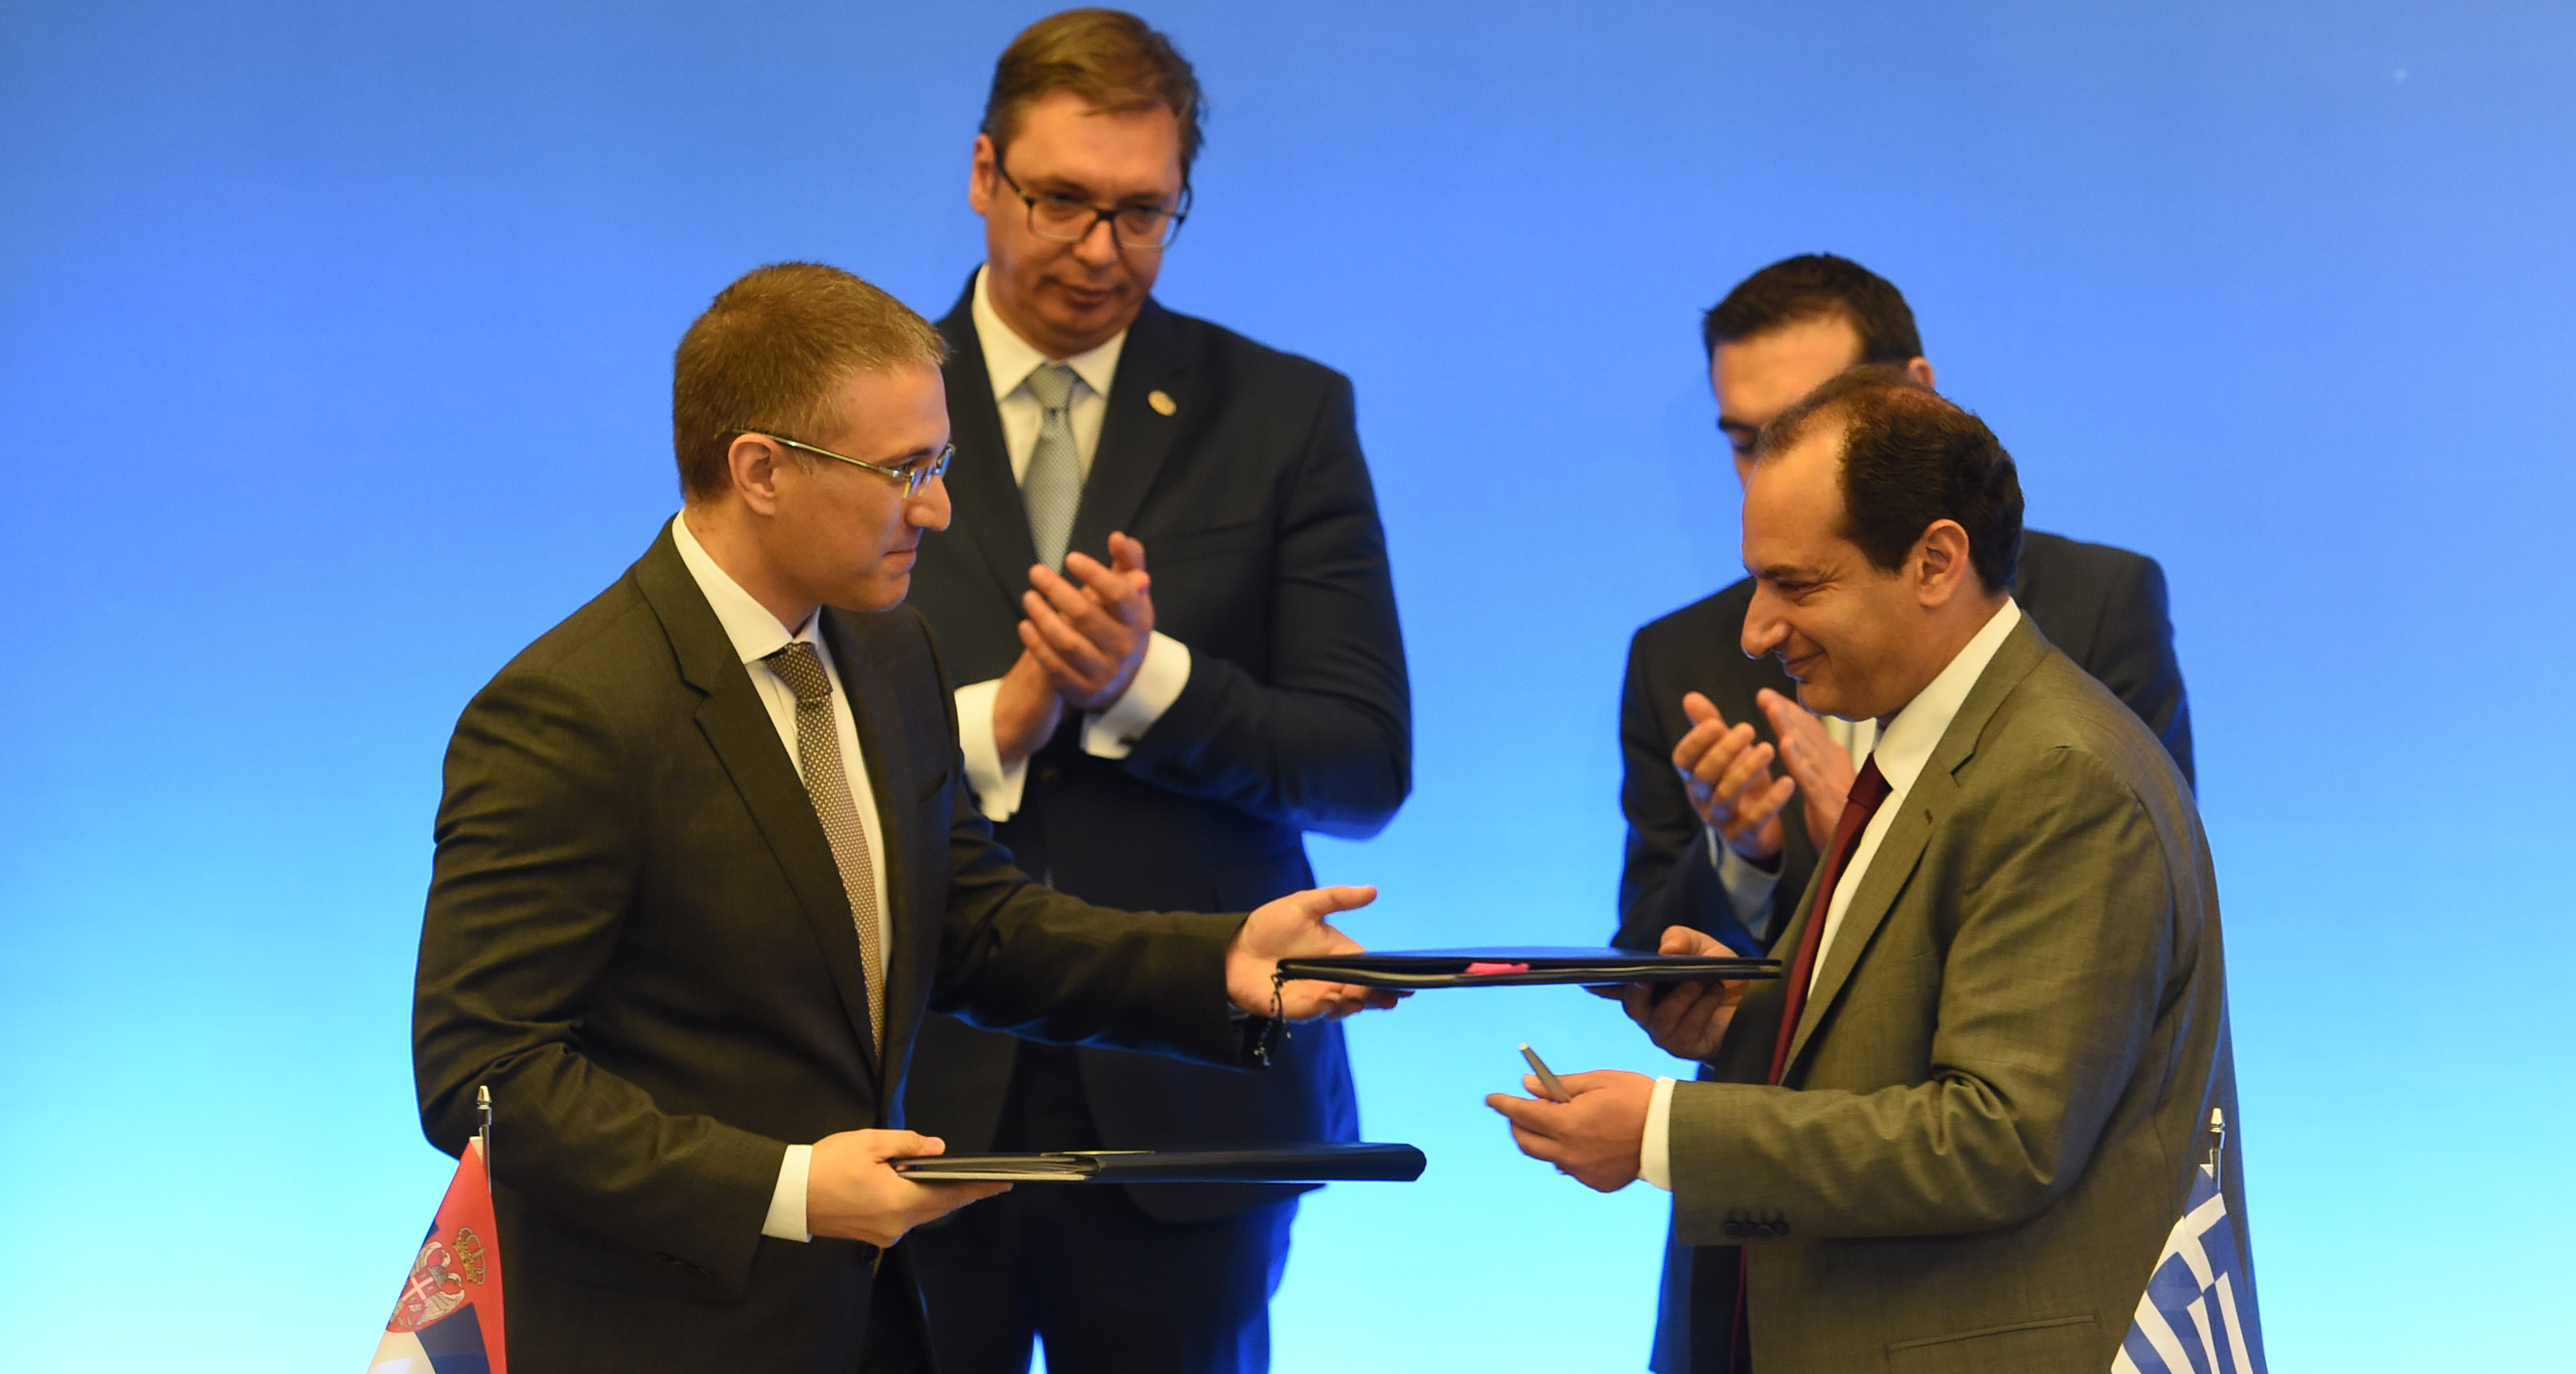 Potpisan Sporazum između Srbije i Grčke o međusobnom priznavanju vozačkih dozvola